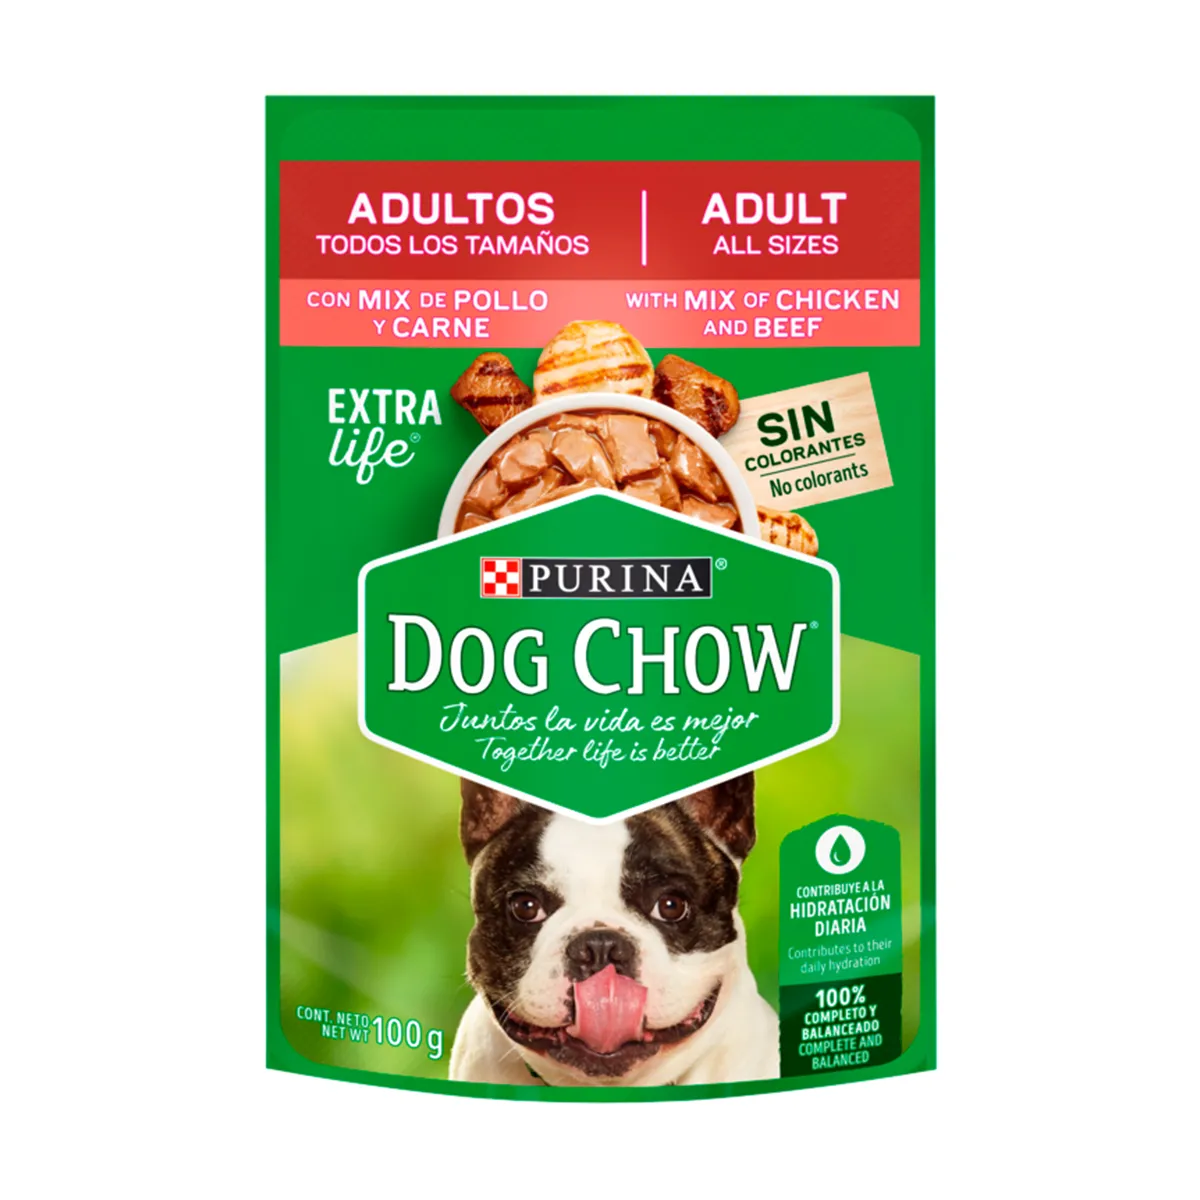 purina-dog-chow-alimento-húmedo-todos-los-tamaños-mix-de-pollo-y-carne.jpg